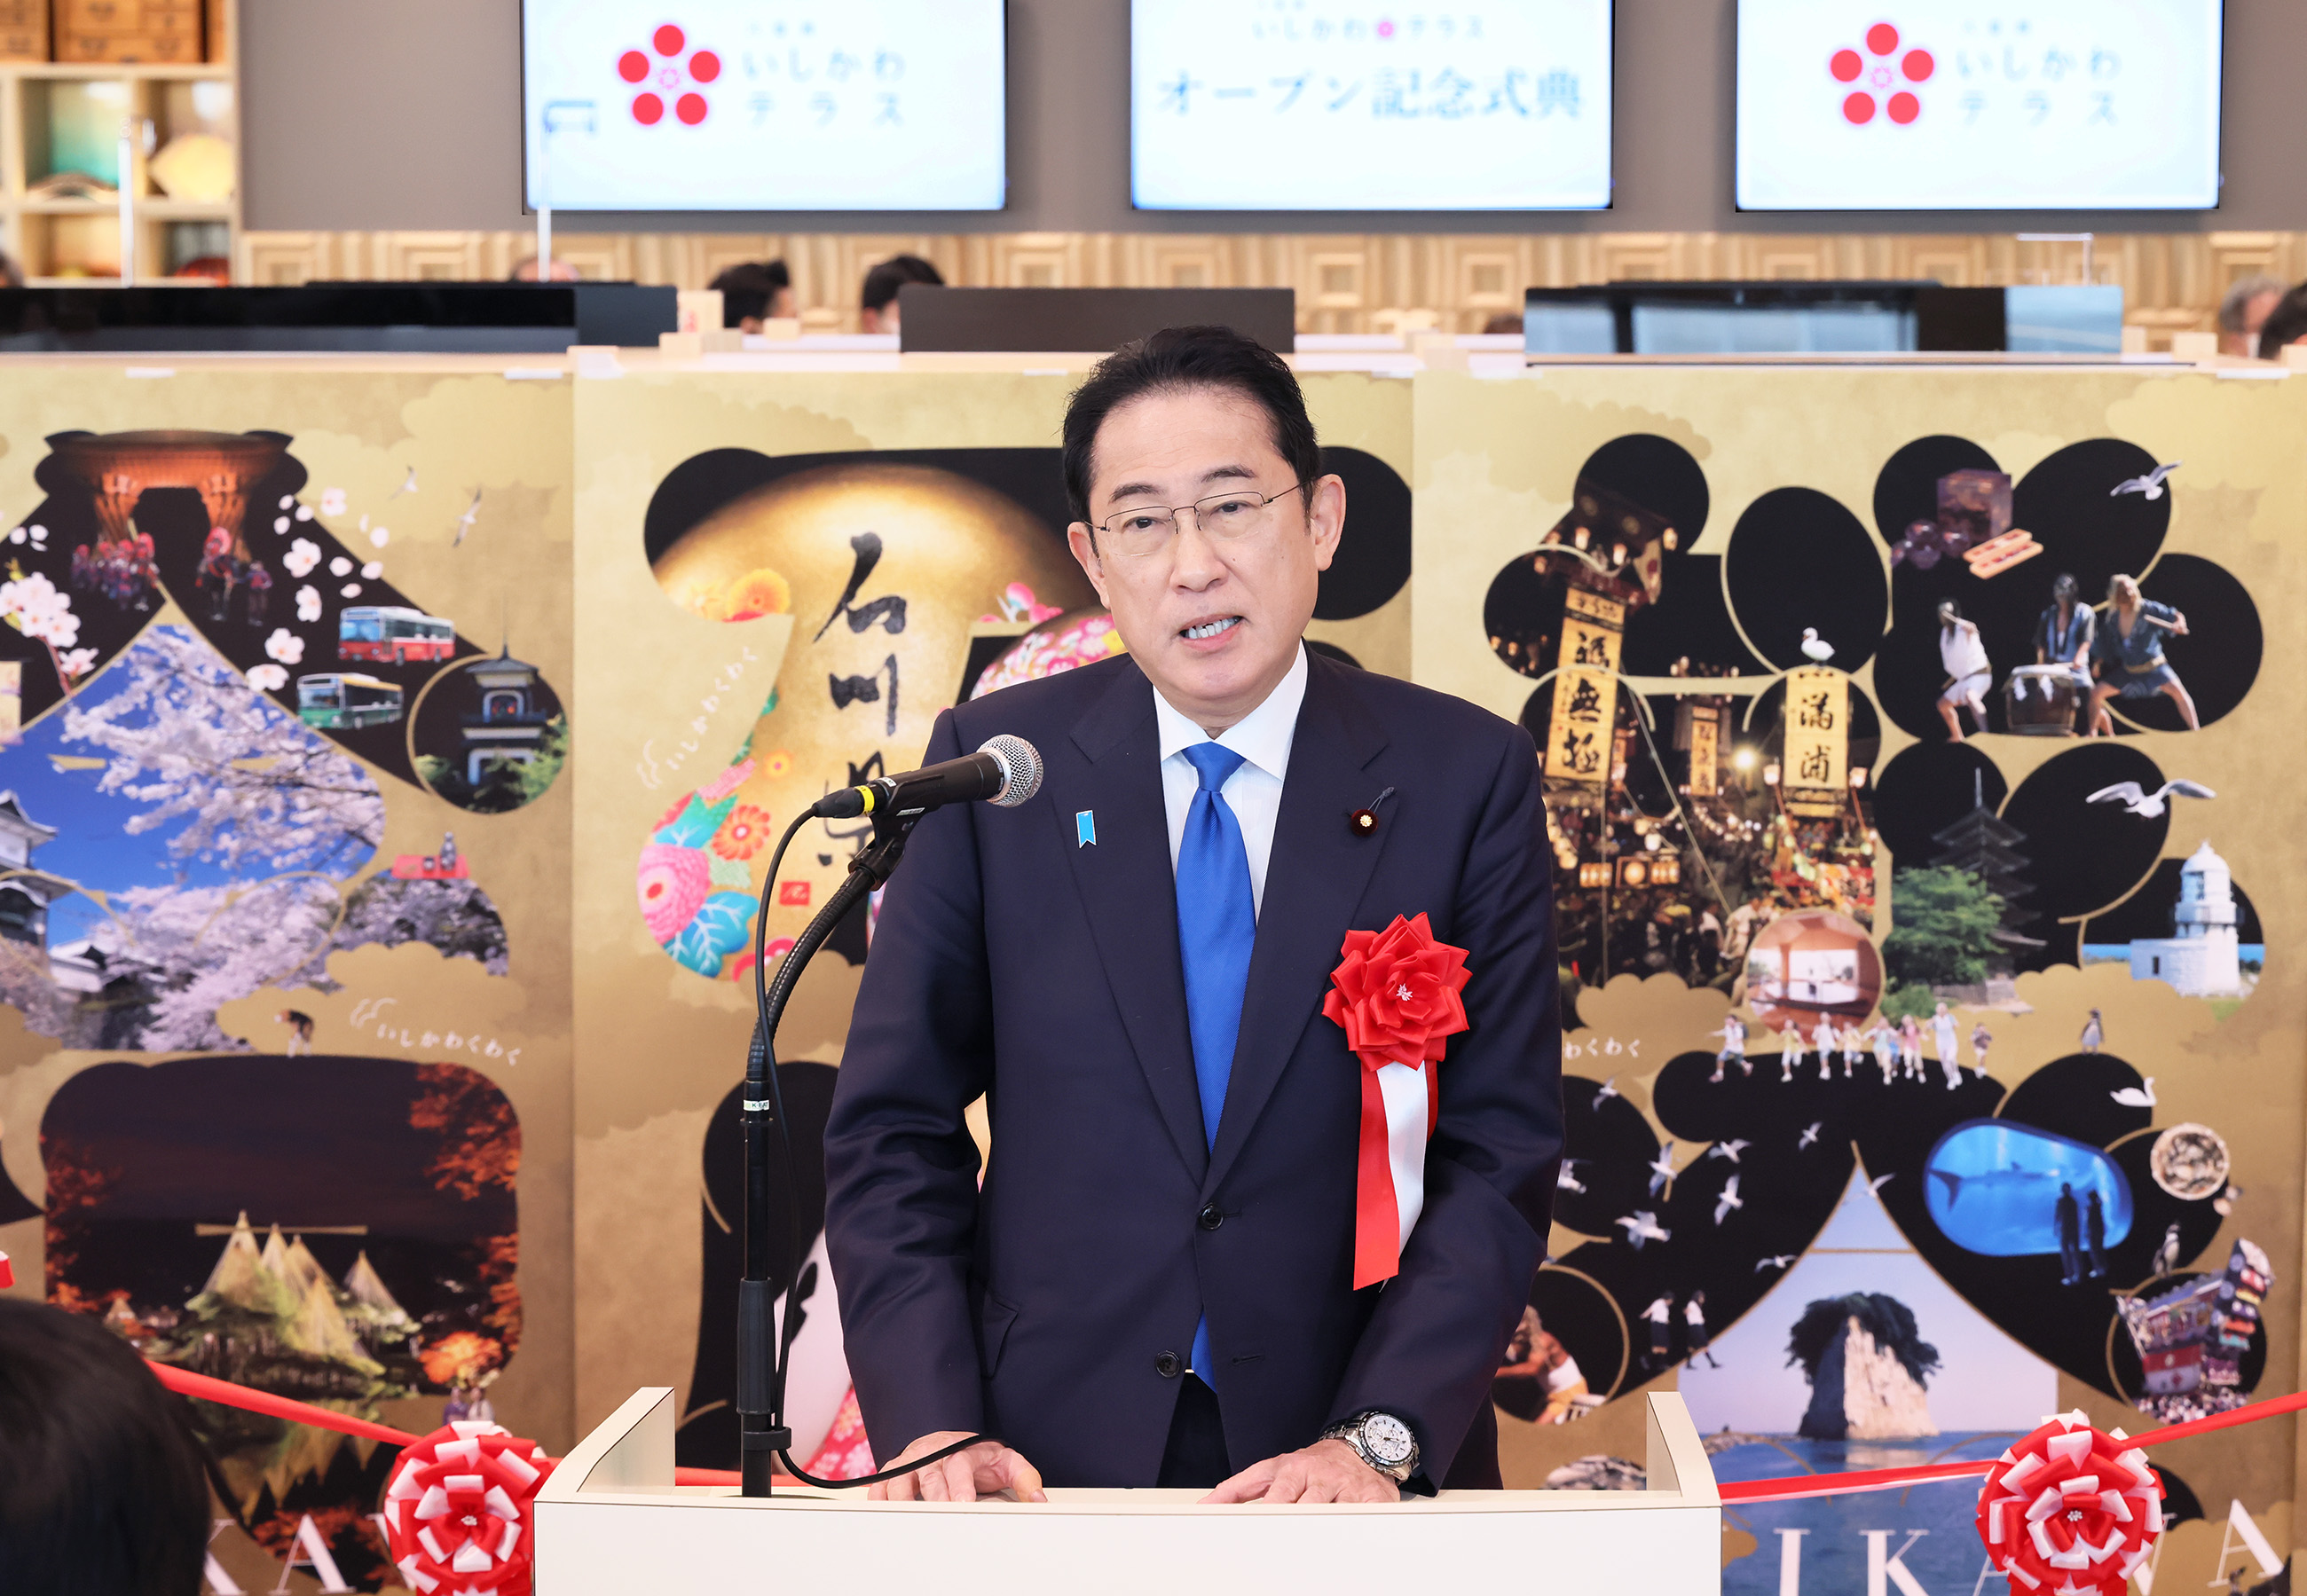 Opening Ceremony for Ishikawa Prefecture’s Antenna Shop “Yaesu Ishikawa Terrace” 